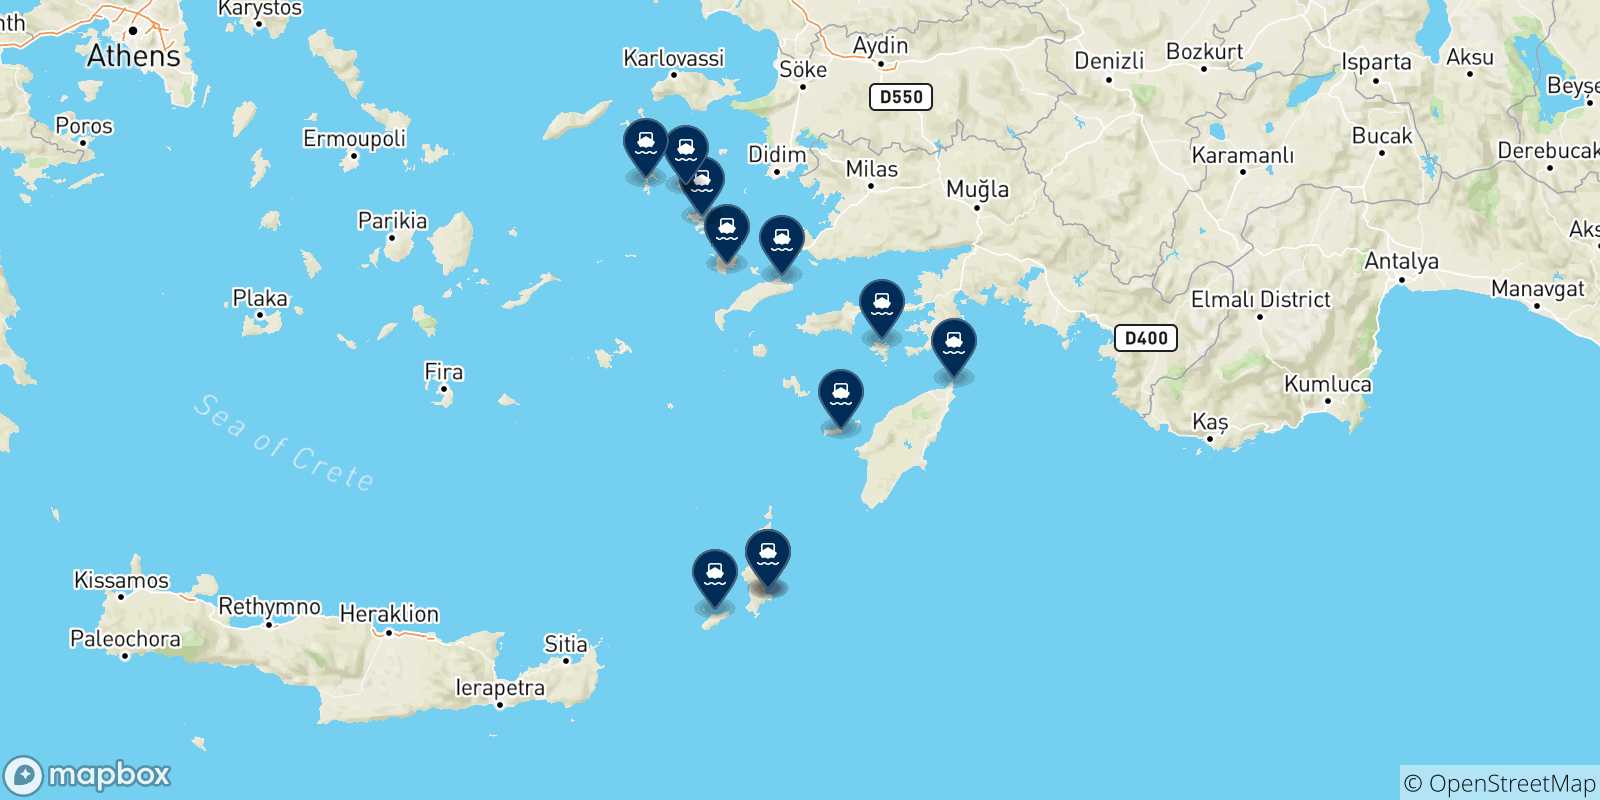 Mappa delle possibili rotte tra Karpathos e le Isole Dodecaneso